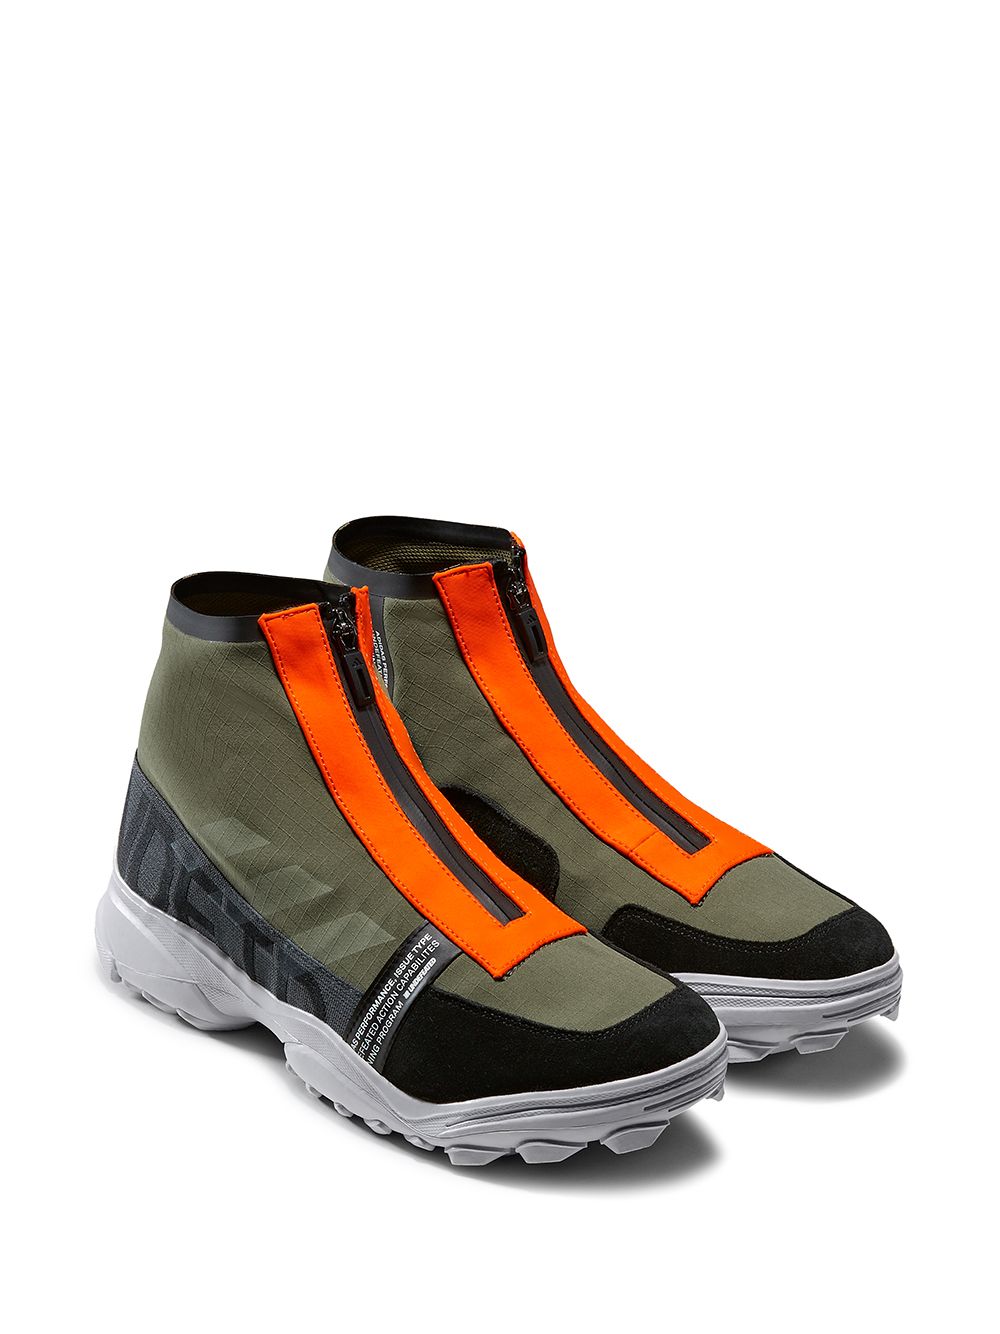 Zapatillas adidas x Undefeated GSG9 disponibles en tallas 45,5. Envío express ✓